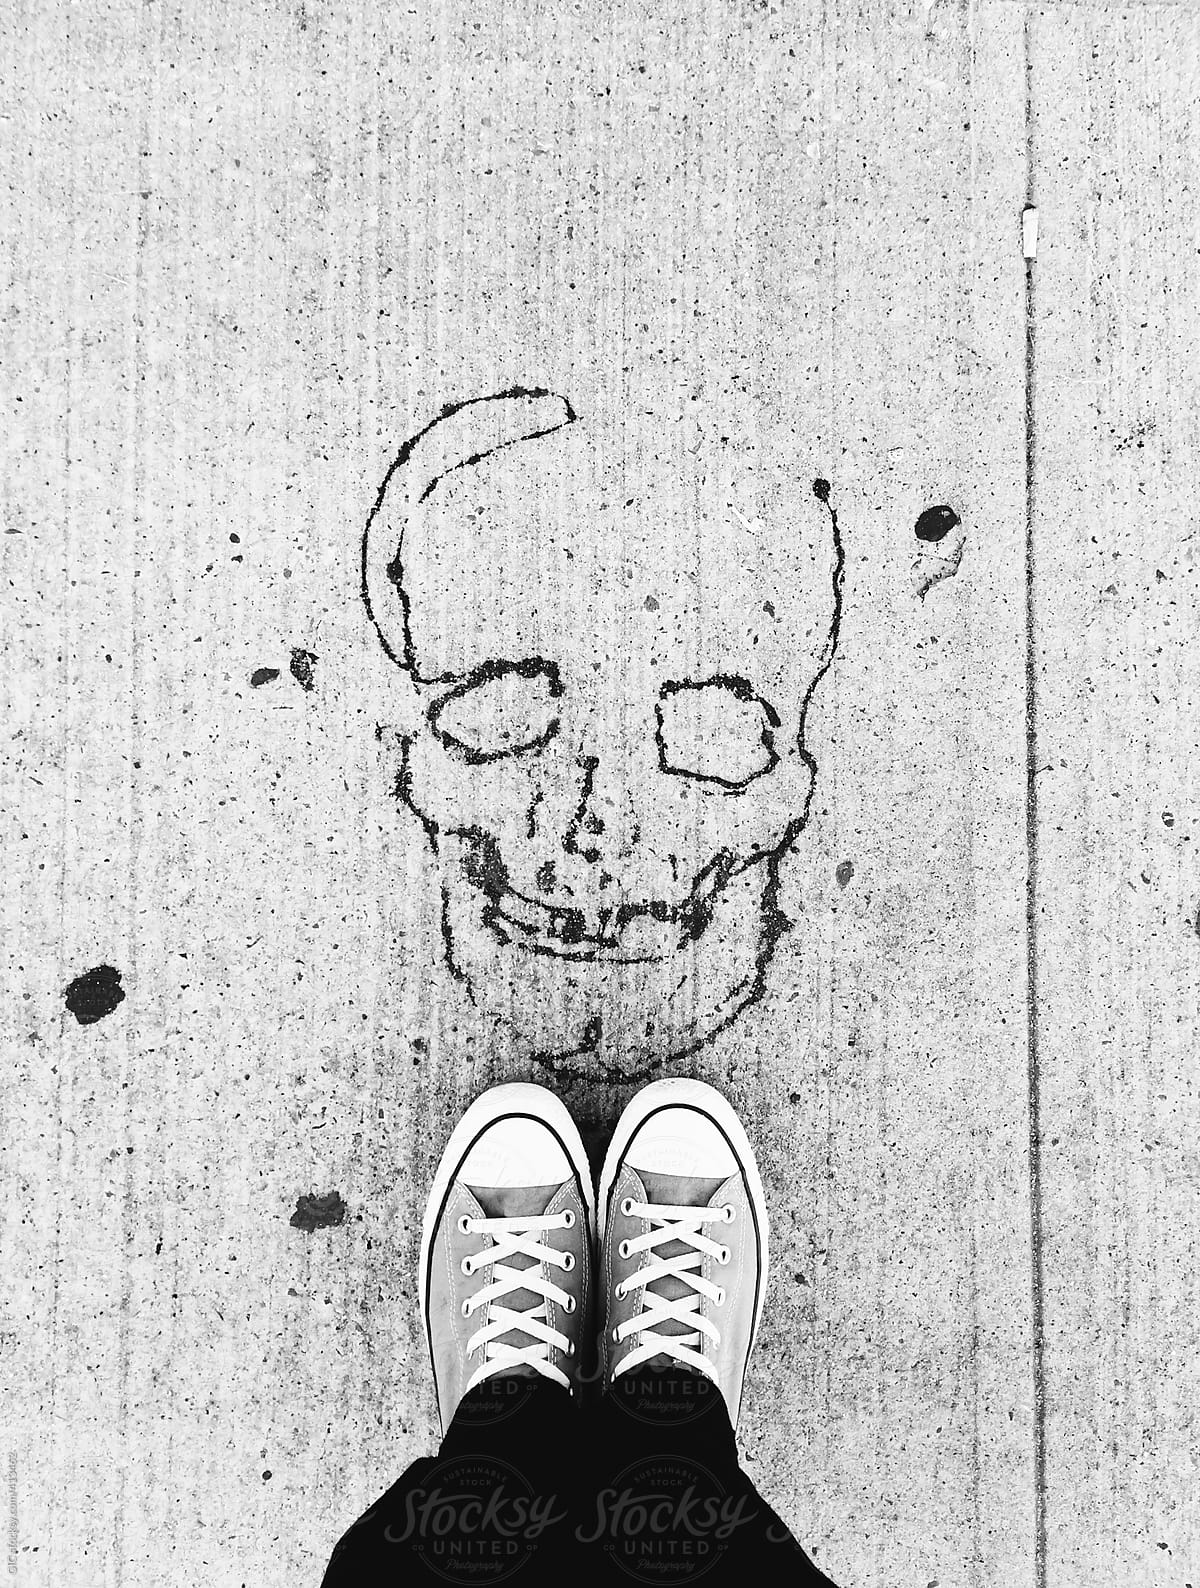 Skull printed on the asphalt and feet